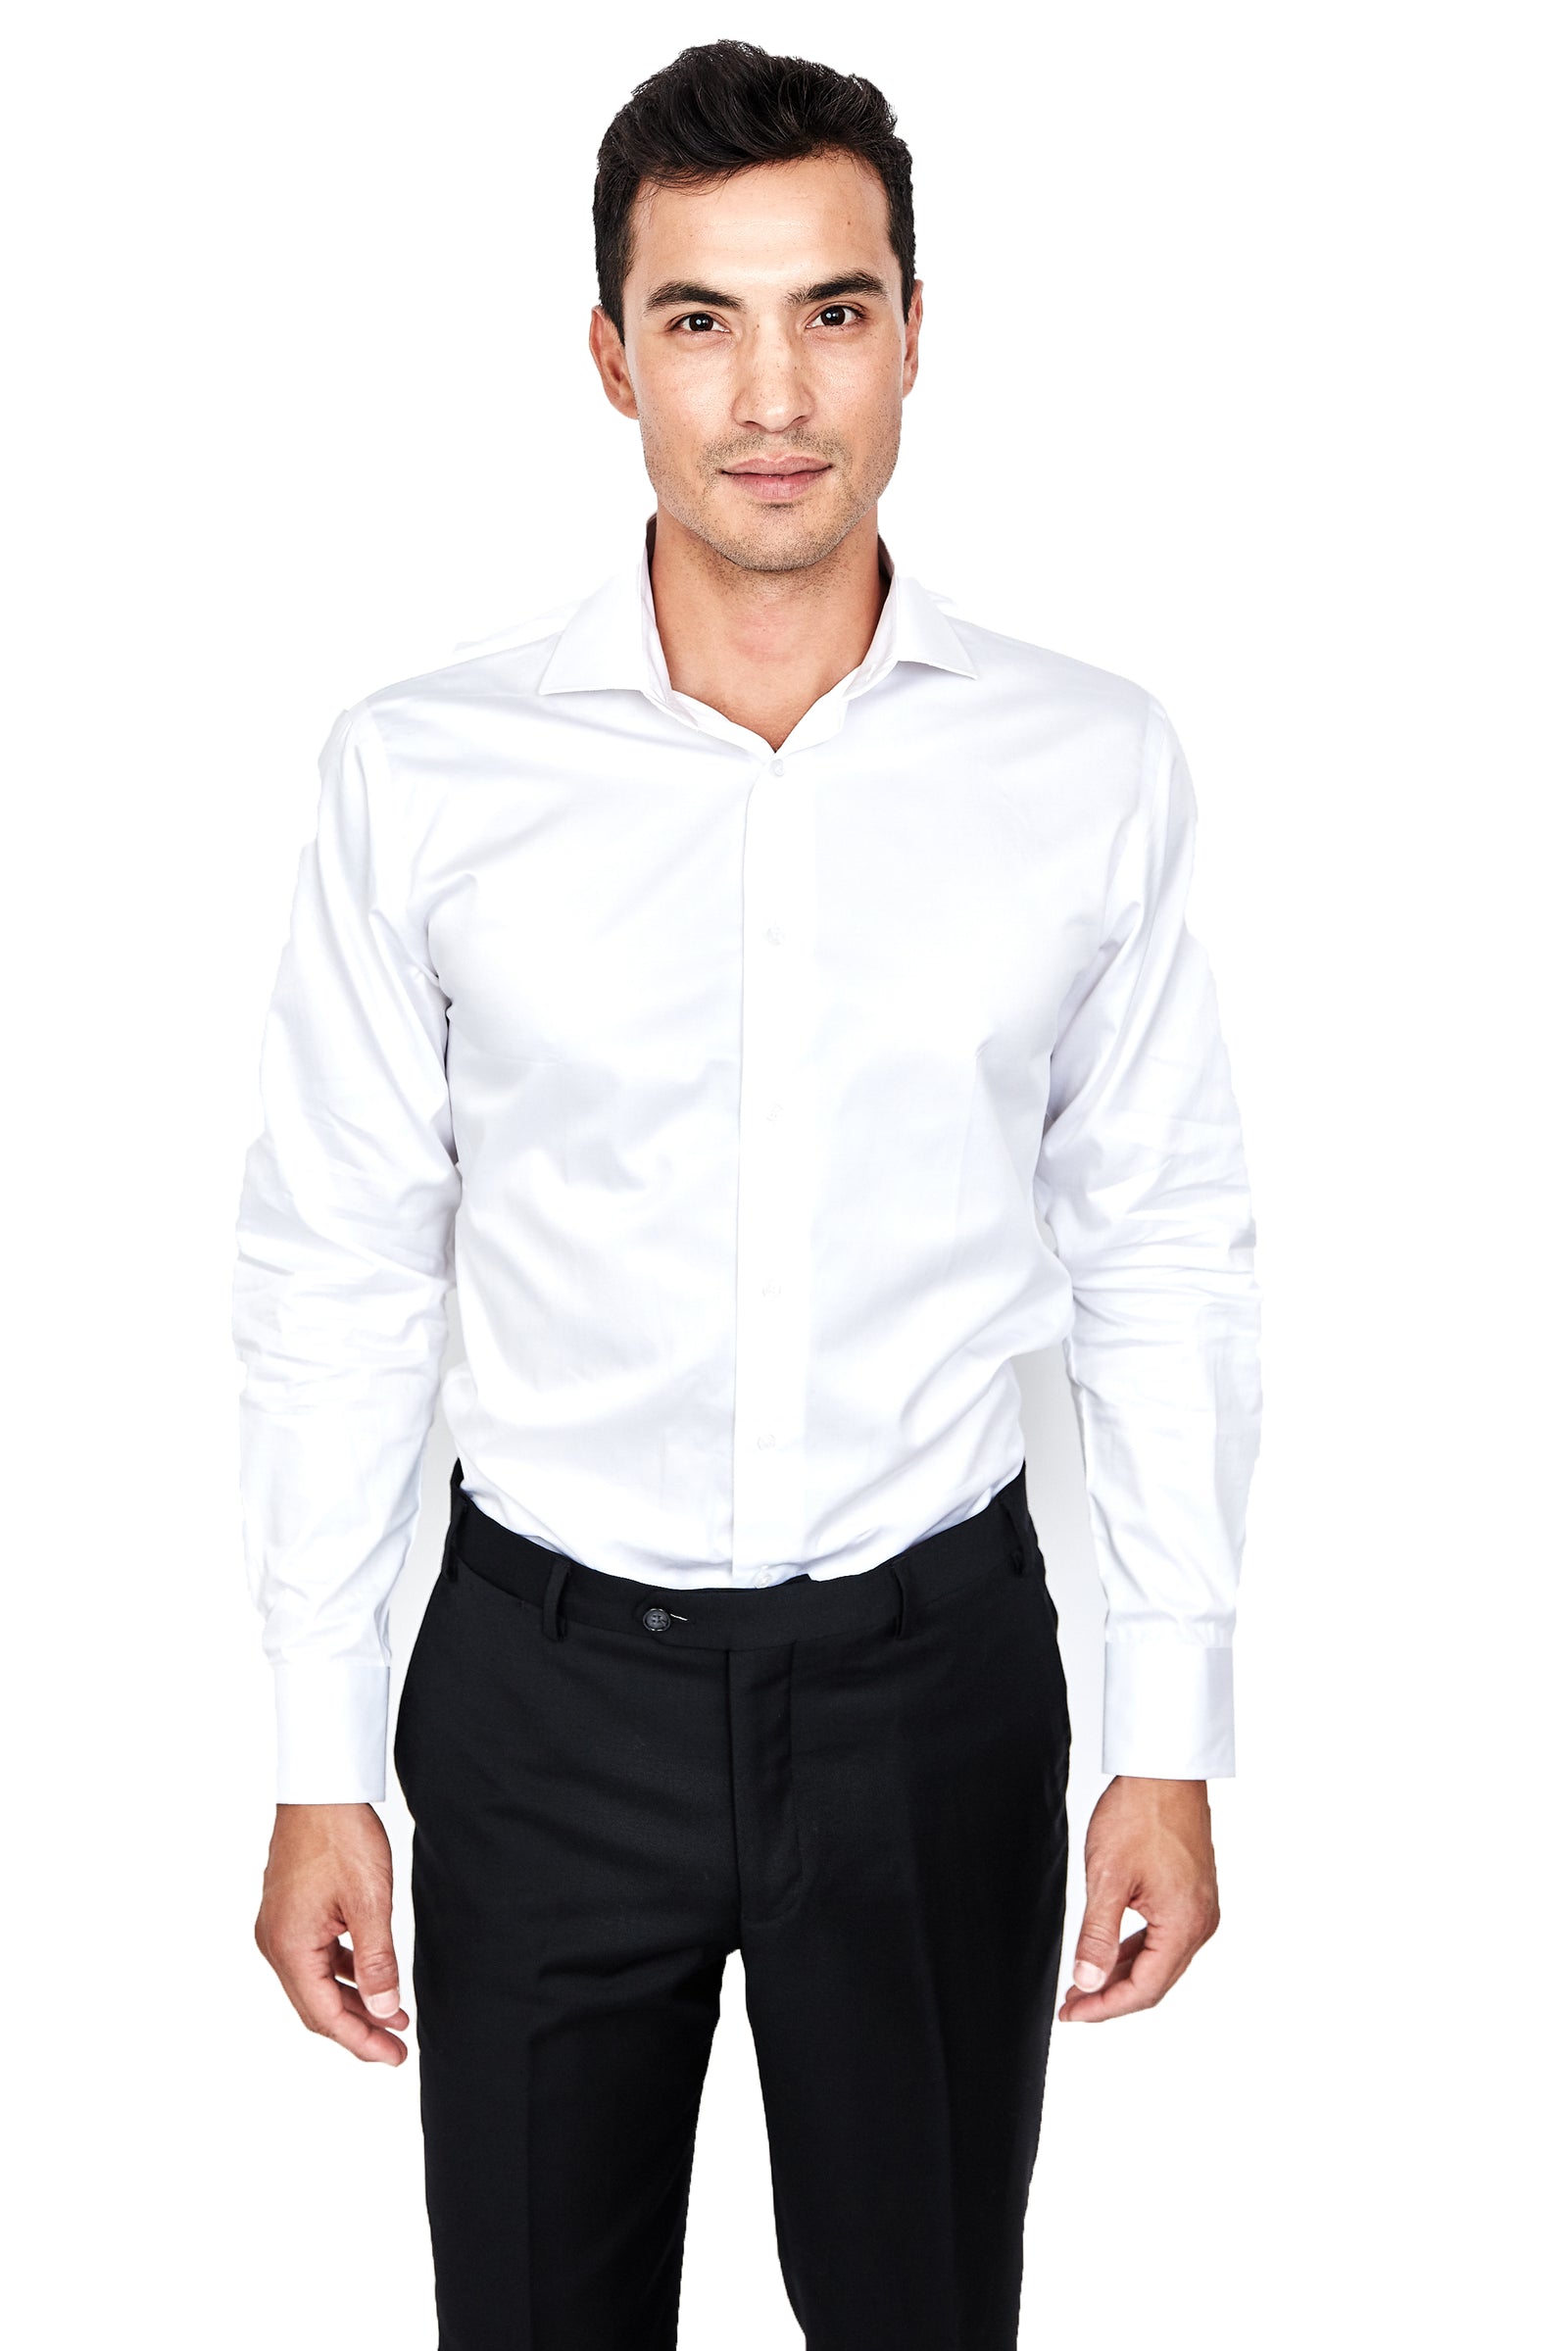 100% Cotton White Shirt - The Suit Spot